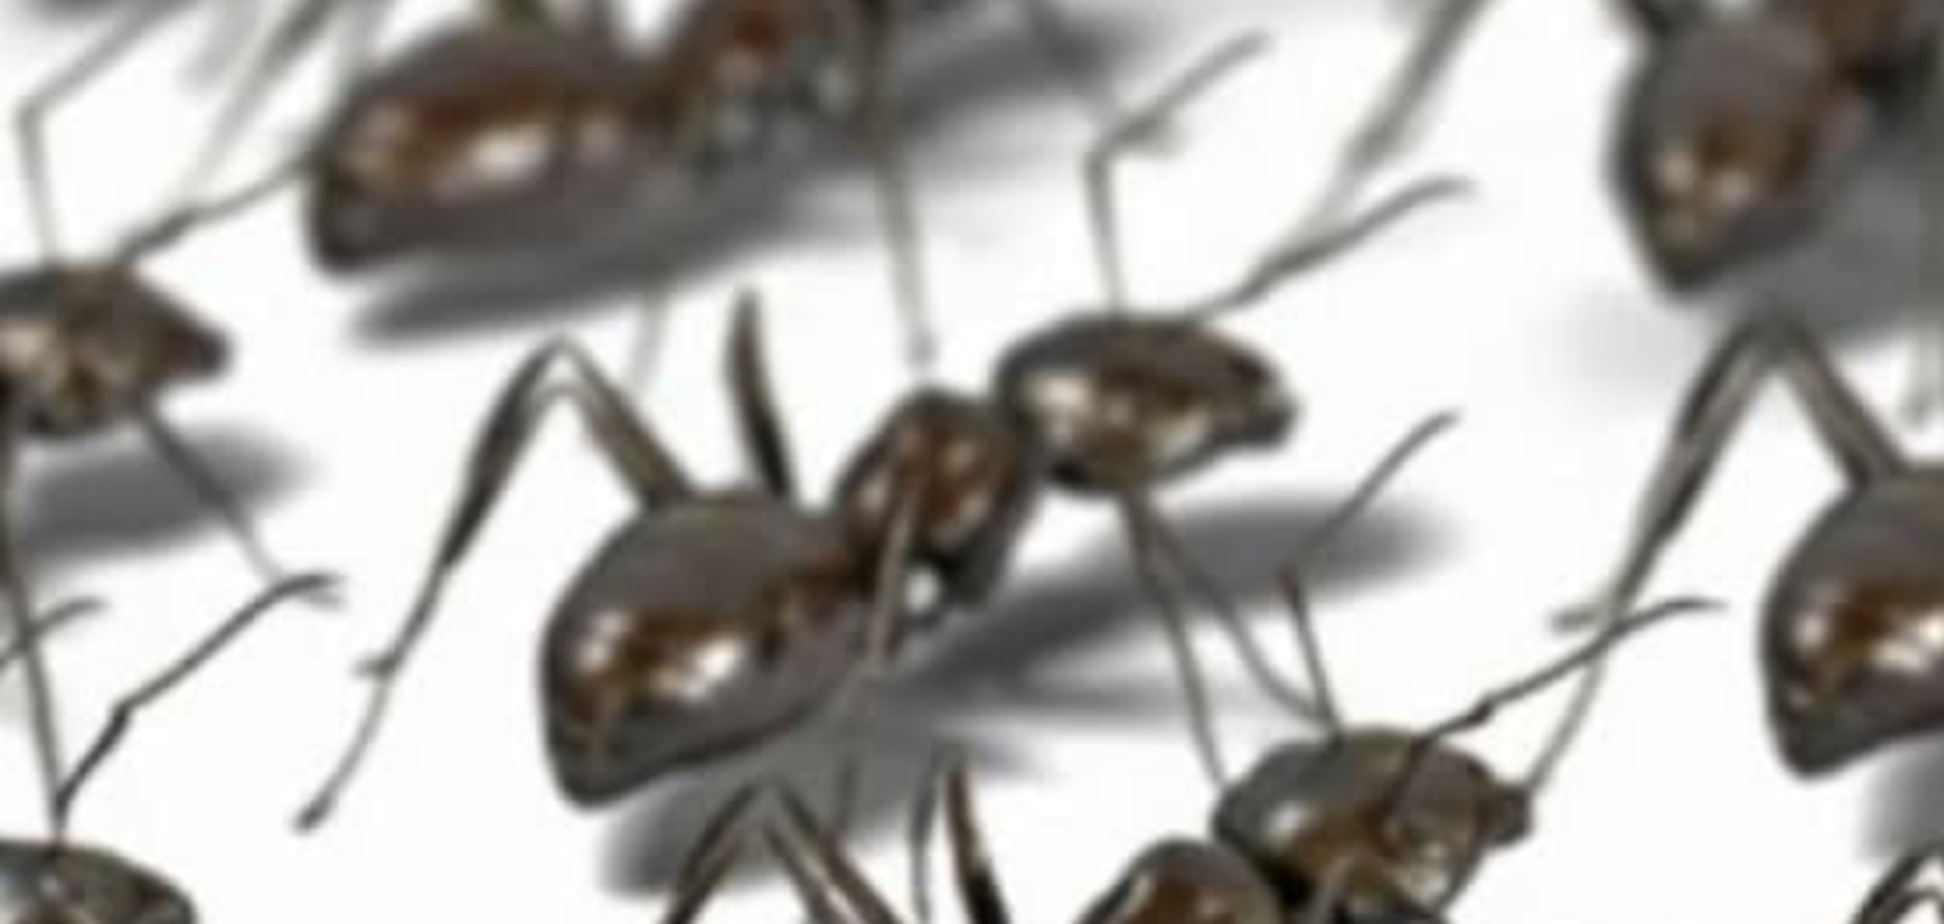 Синхронность движений муравьев напоминает работу беспроводной сети - ученые